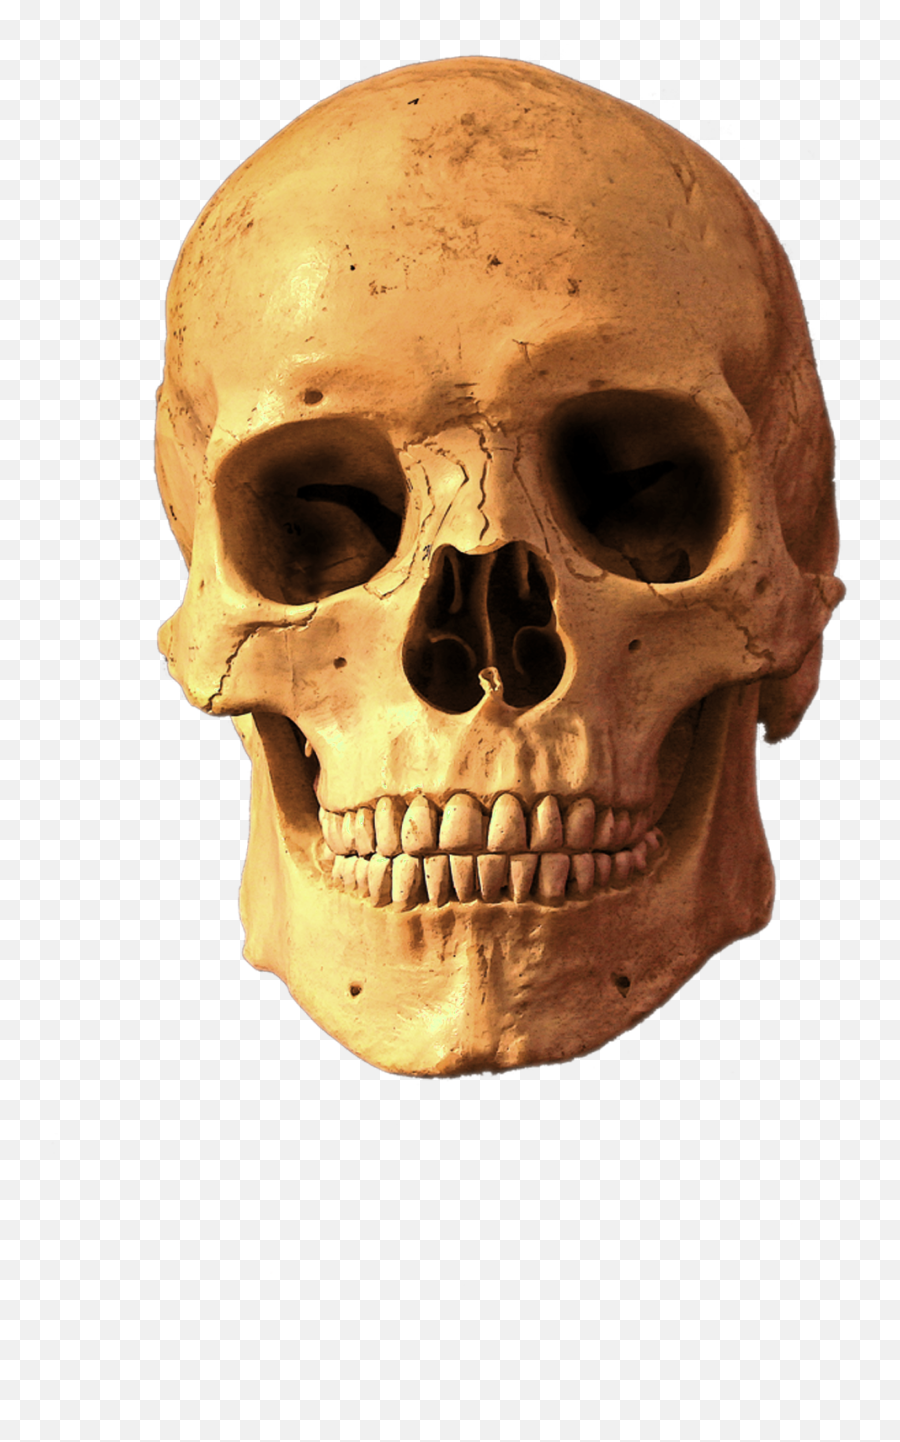 Skull Transparent Background Png Image - Solid Emoji,Skull Png